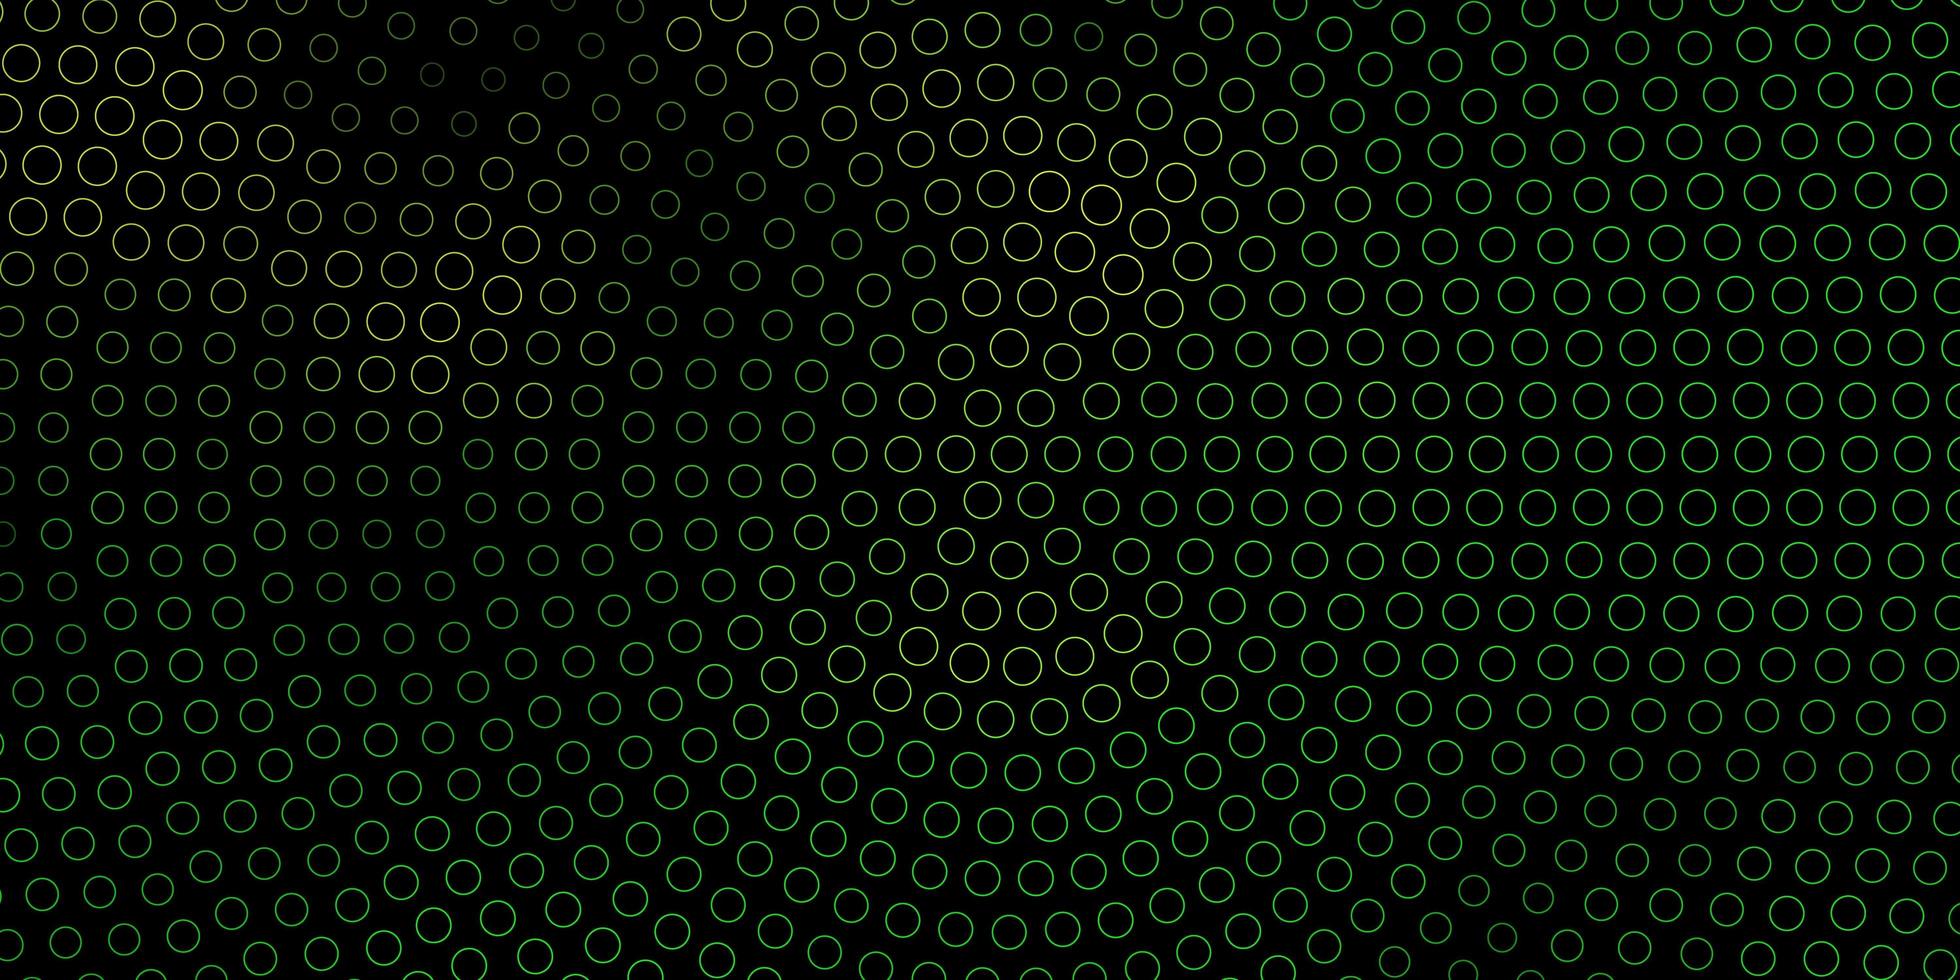 layout de vetor verde escuro e amarelo com formas de círculo.